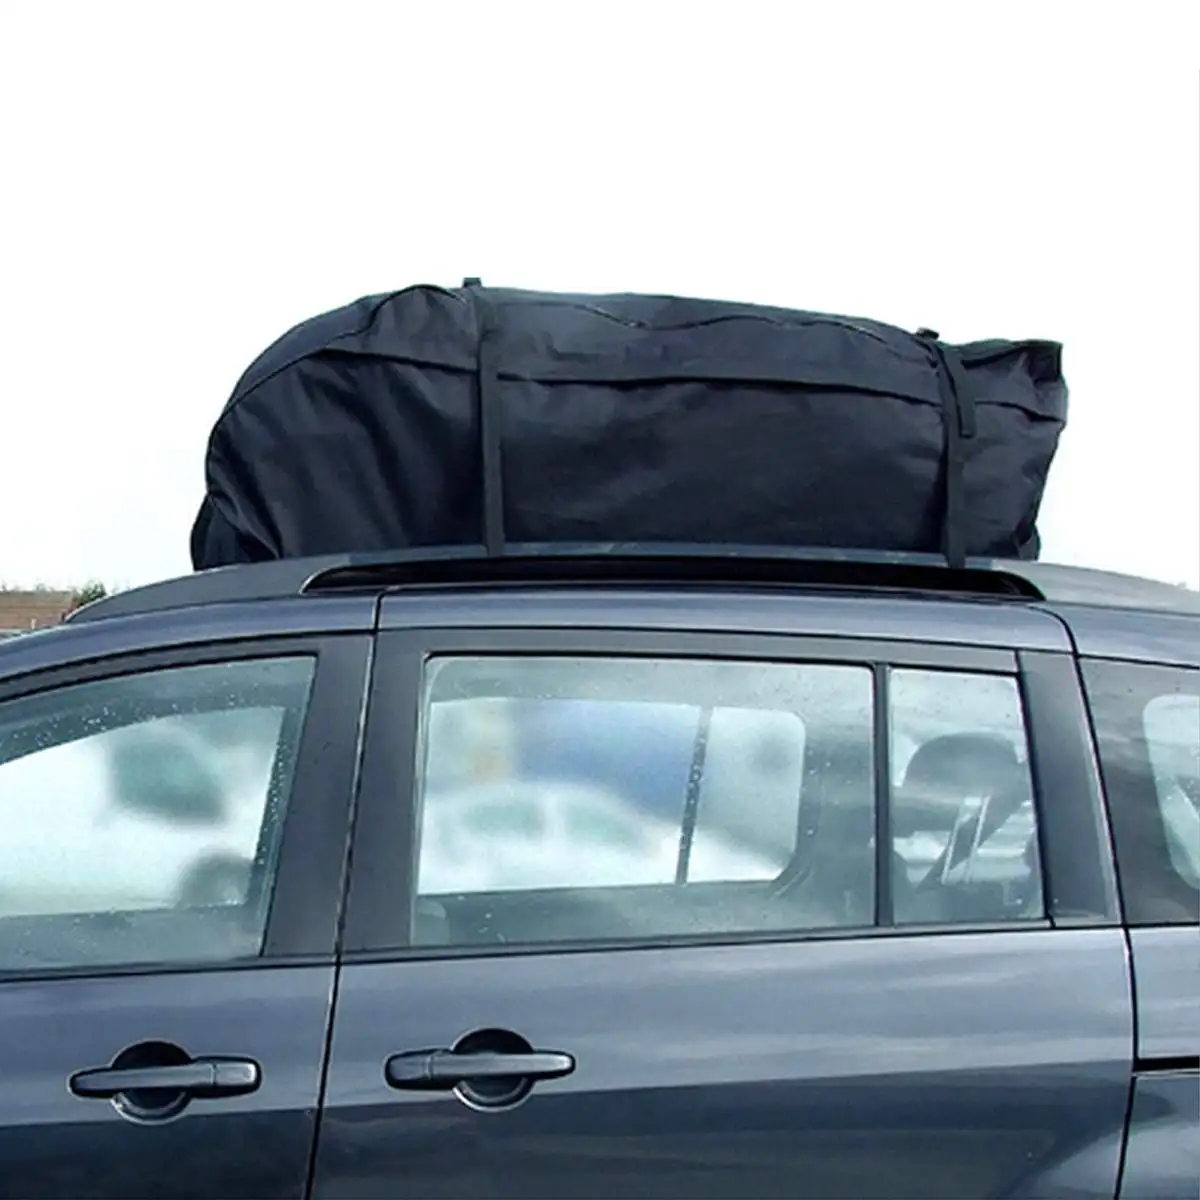 Багажник на крышу автомобиля водонепроницаемый 130x100x45 см|Багажники для крыши - Фото №1